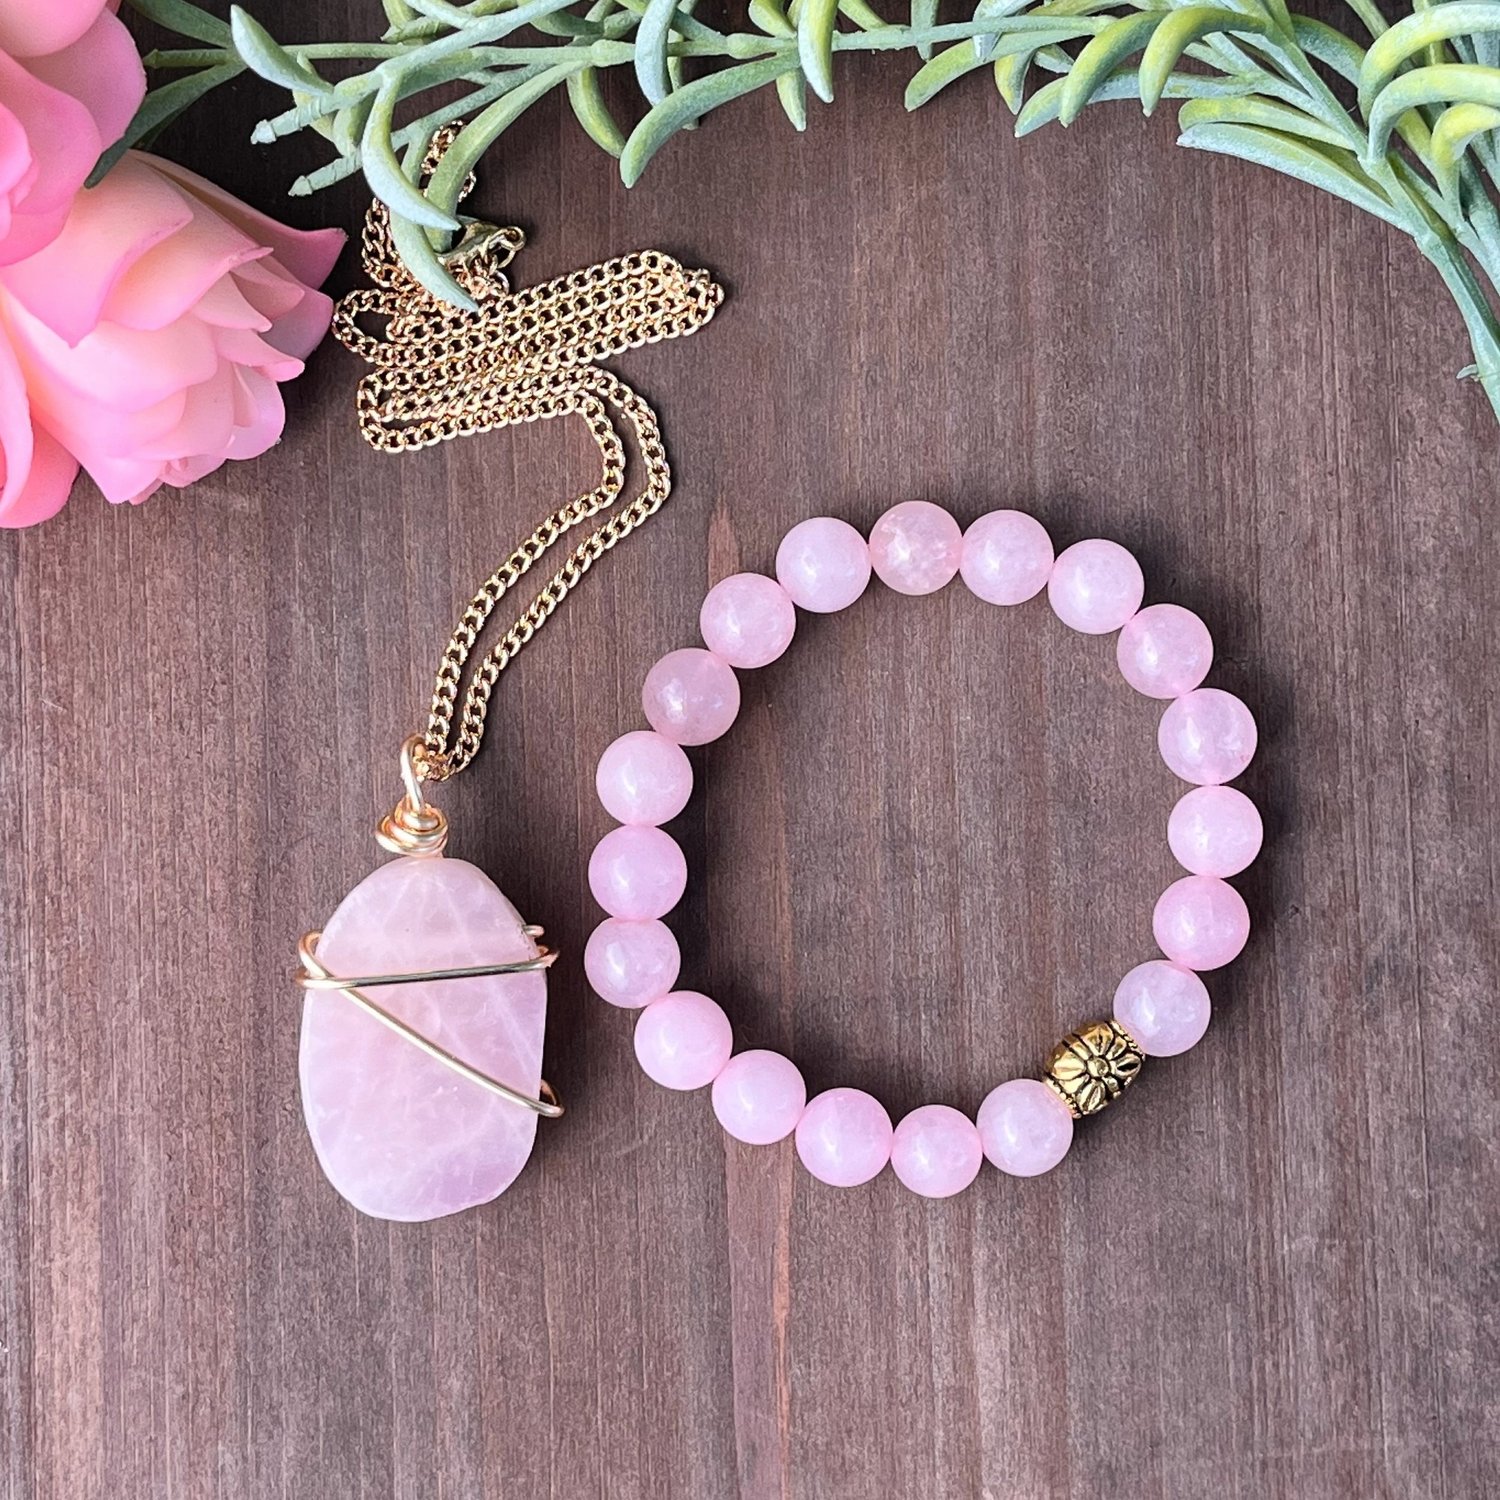 Rose Quartz Bead Necklace for Cancer Awareness 22